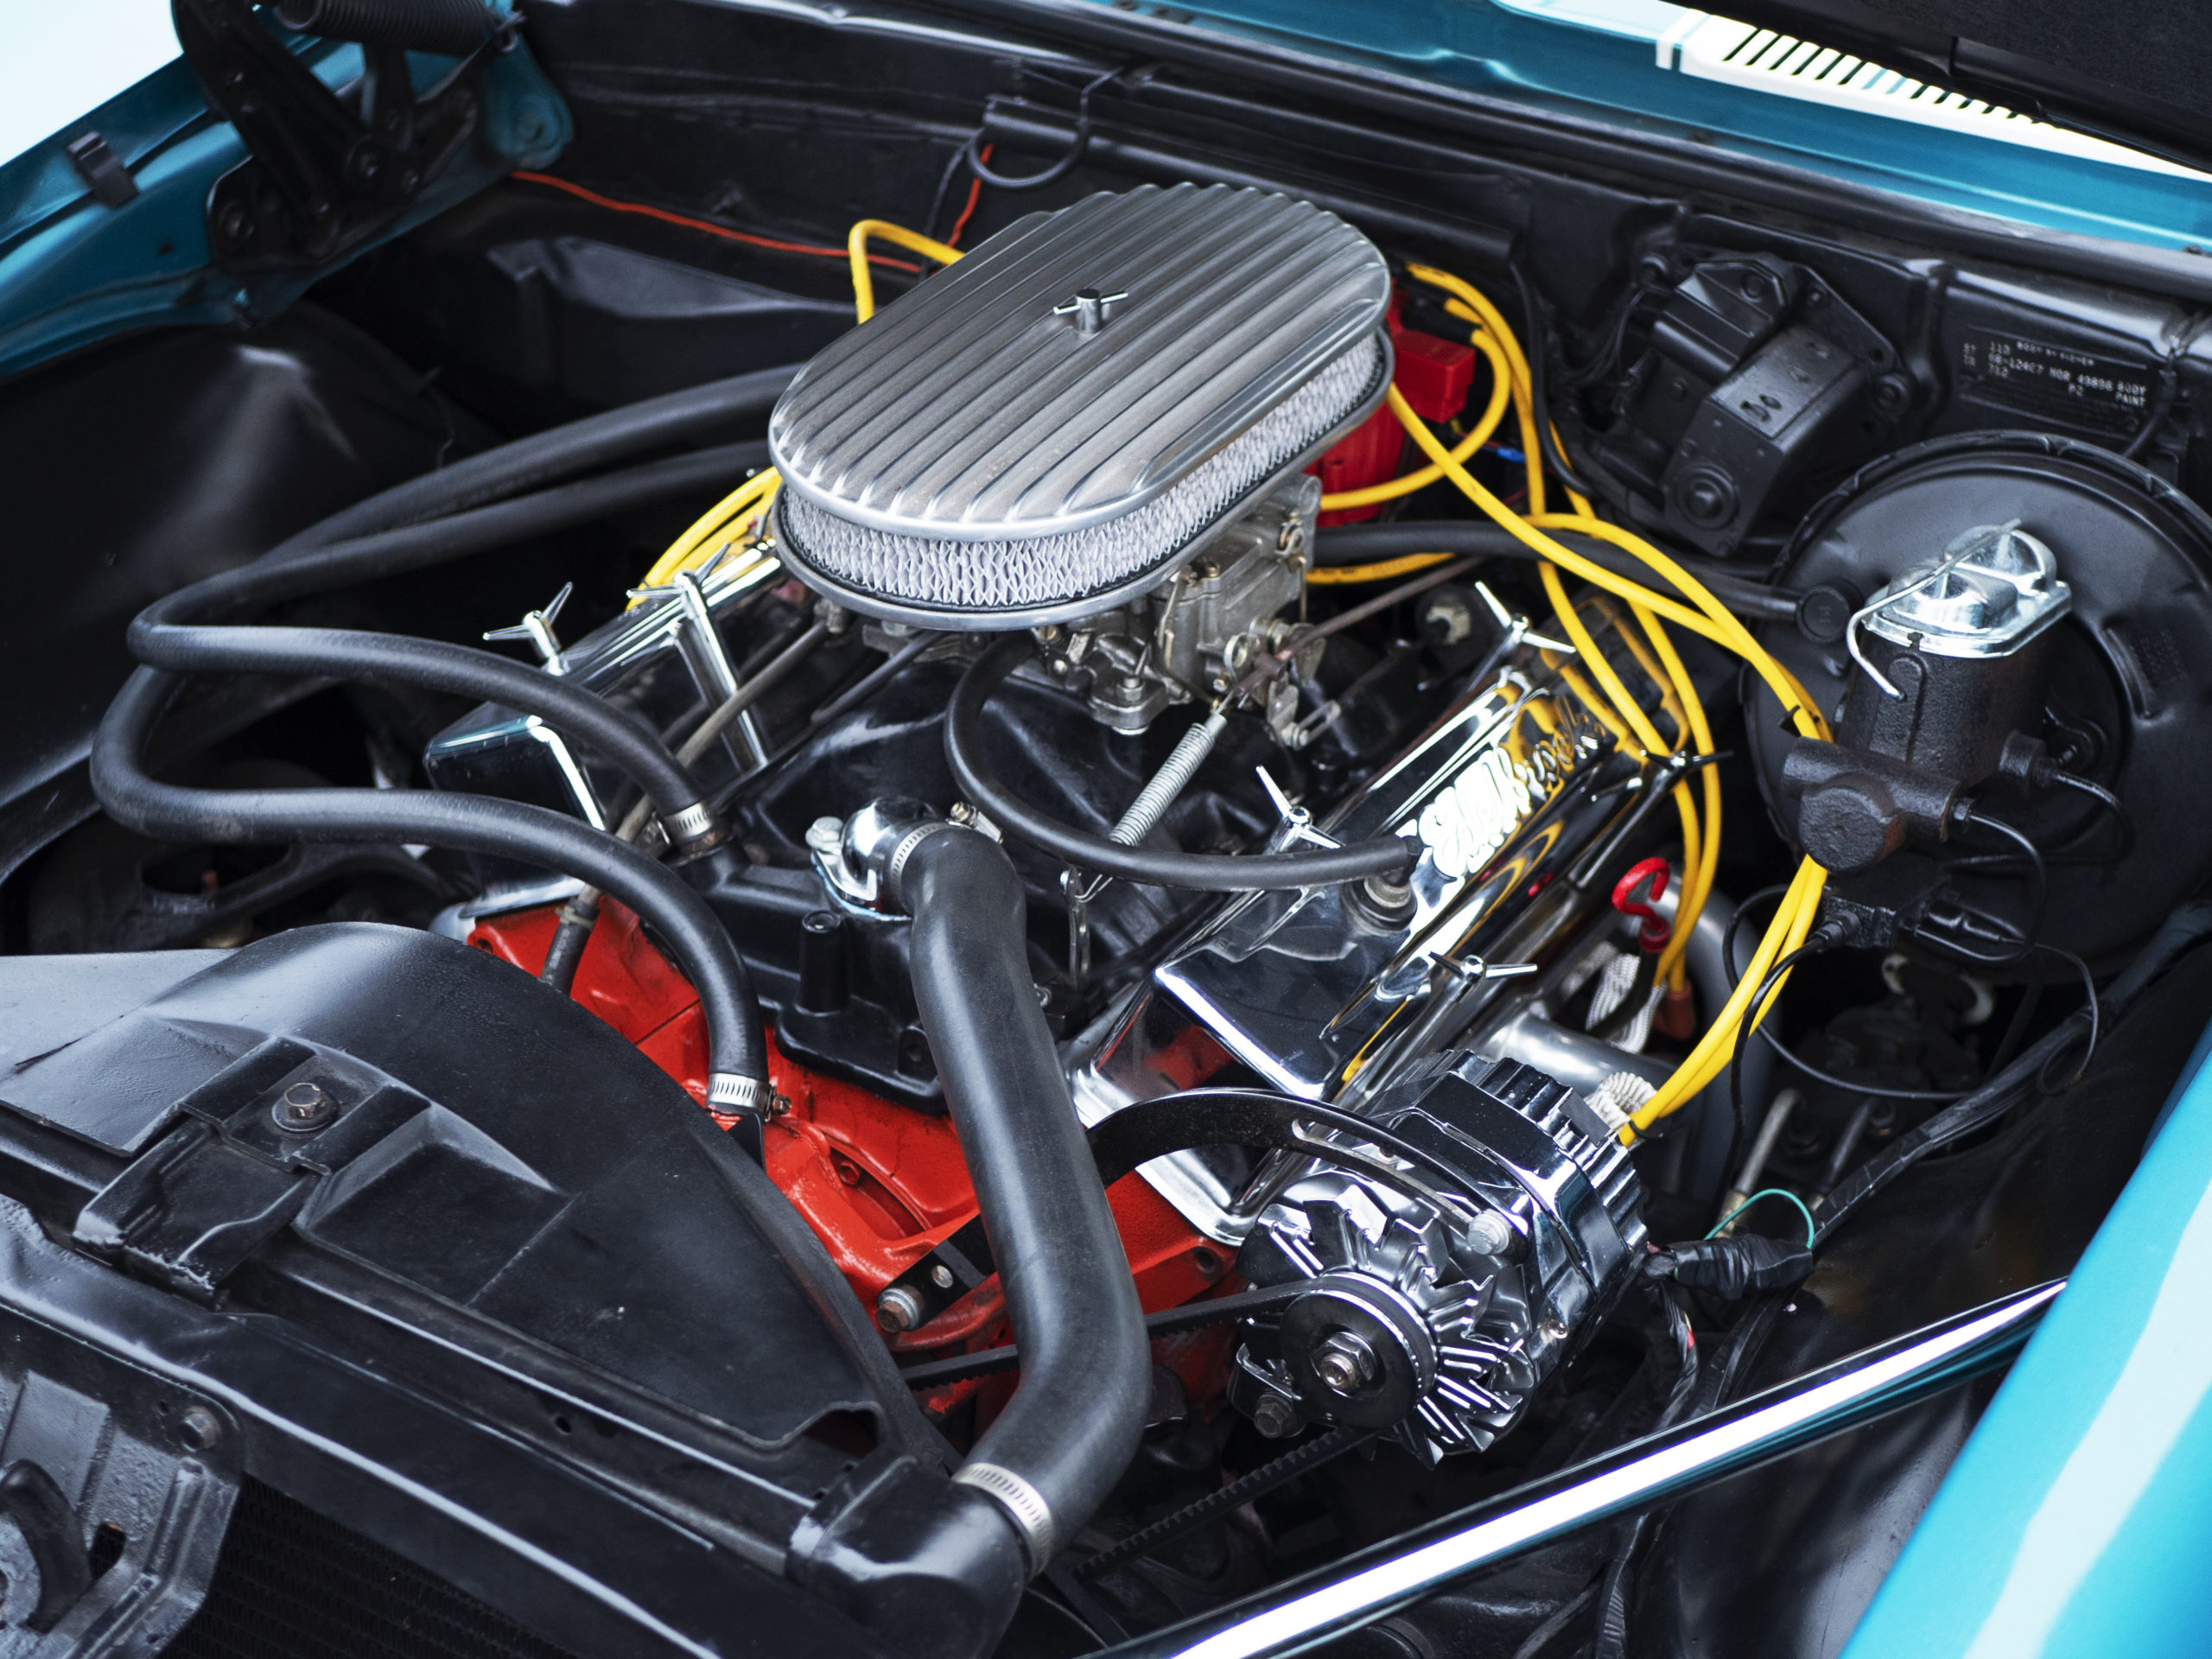 1968-chevy-camaro-engine-monterey-touring-vehicles